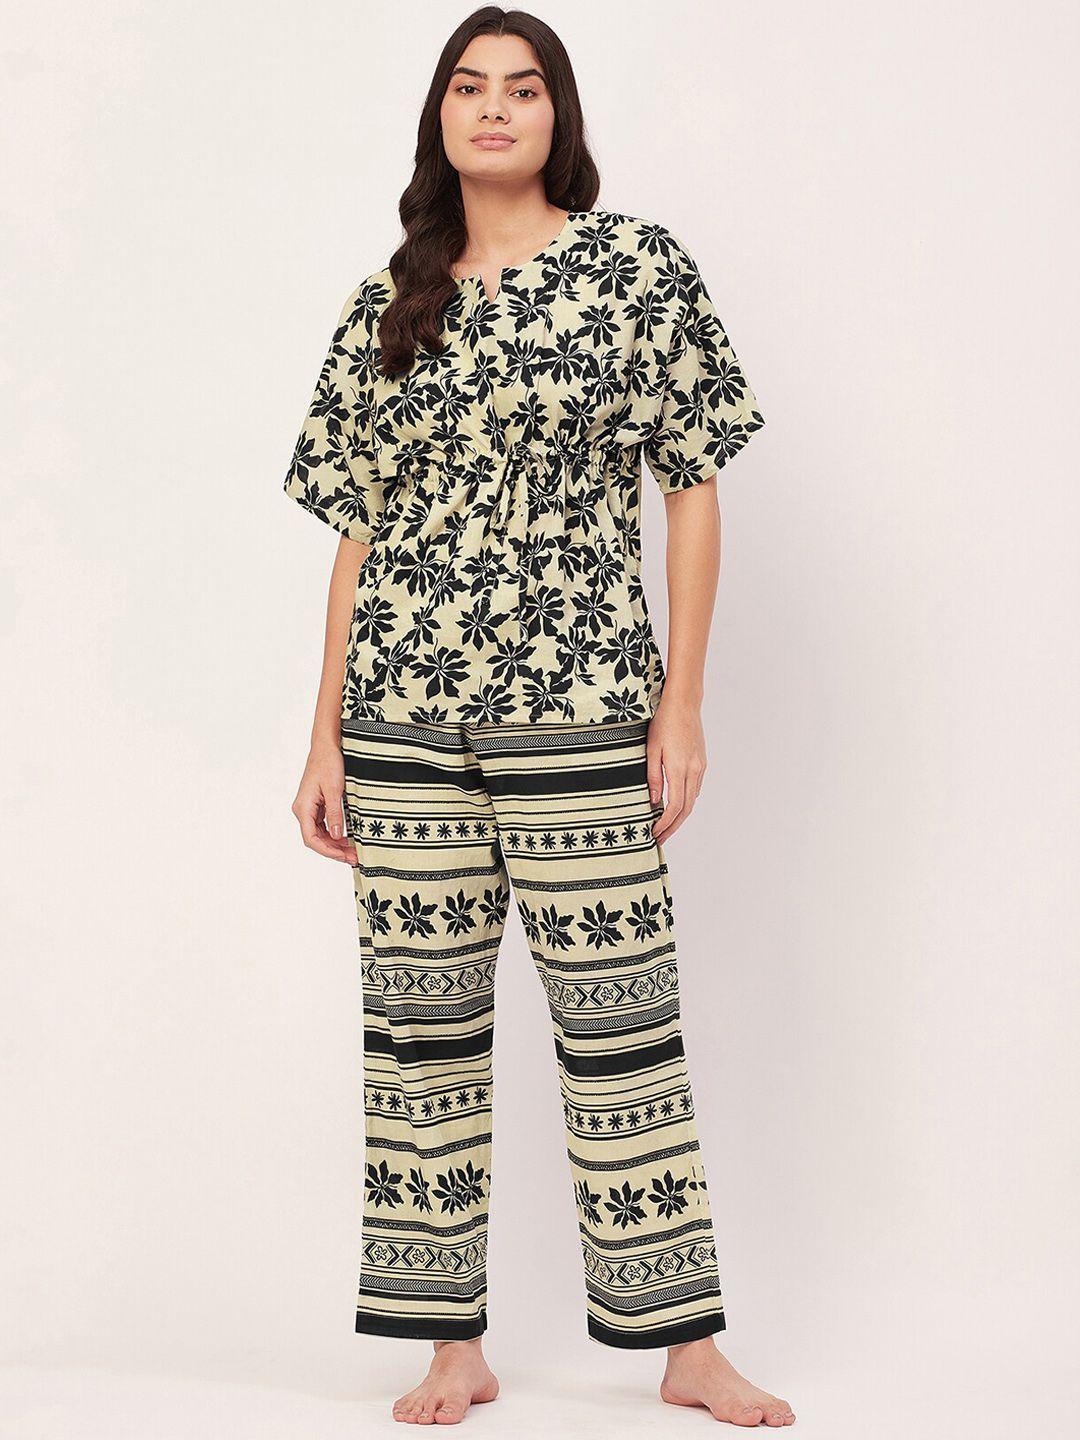 moomaya printed cotton top with pyjamas night suit